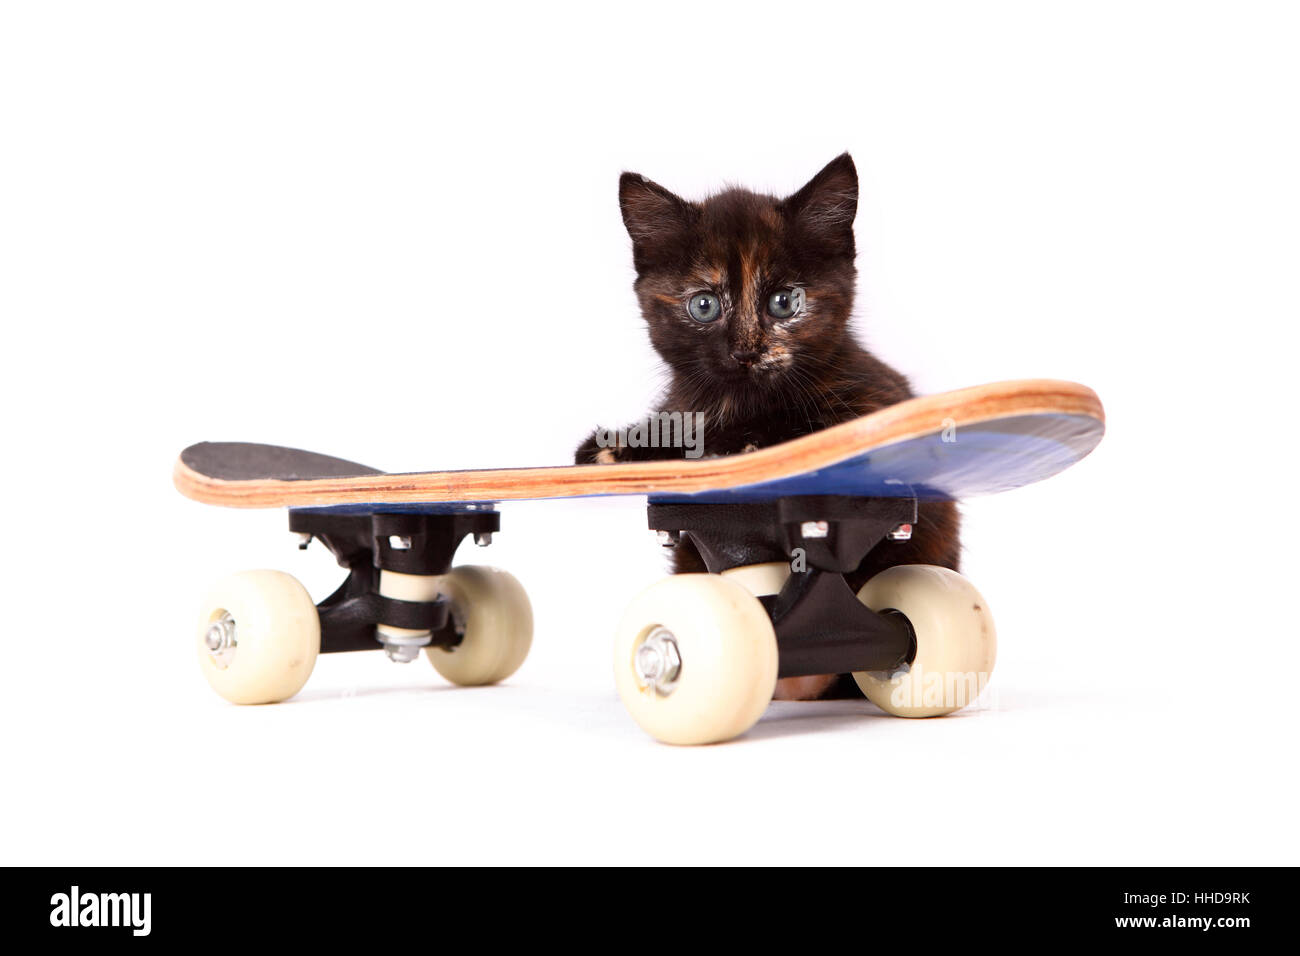 Europaeisch Kurzhaar. Kitten (6 weeks old) behind a skateboard. Studio picture against a white background Stock Photo